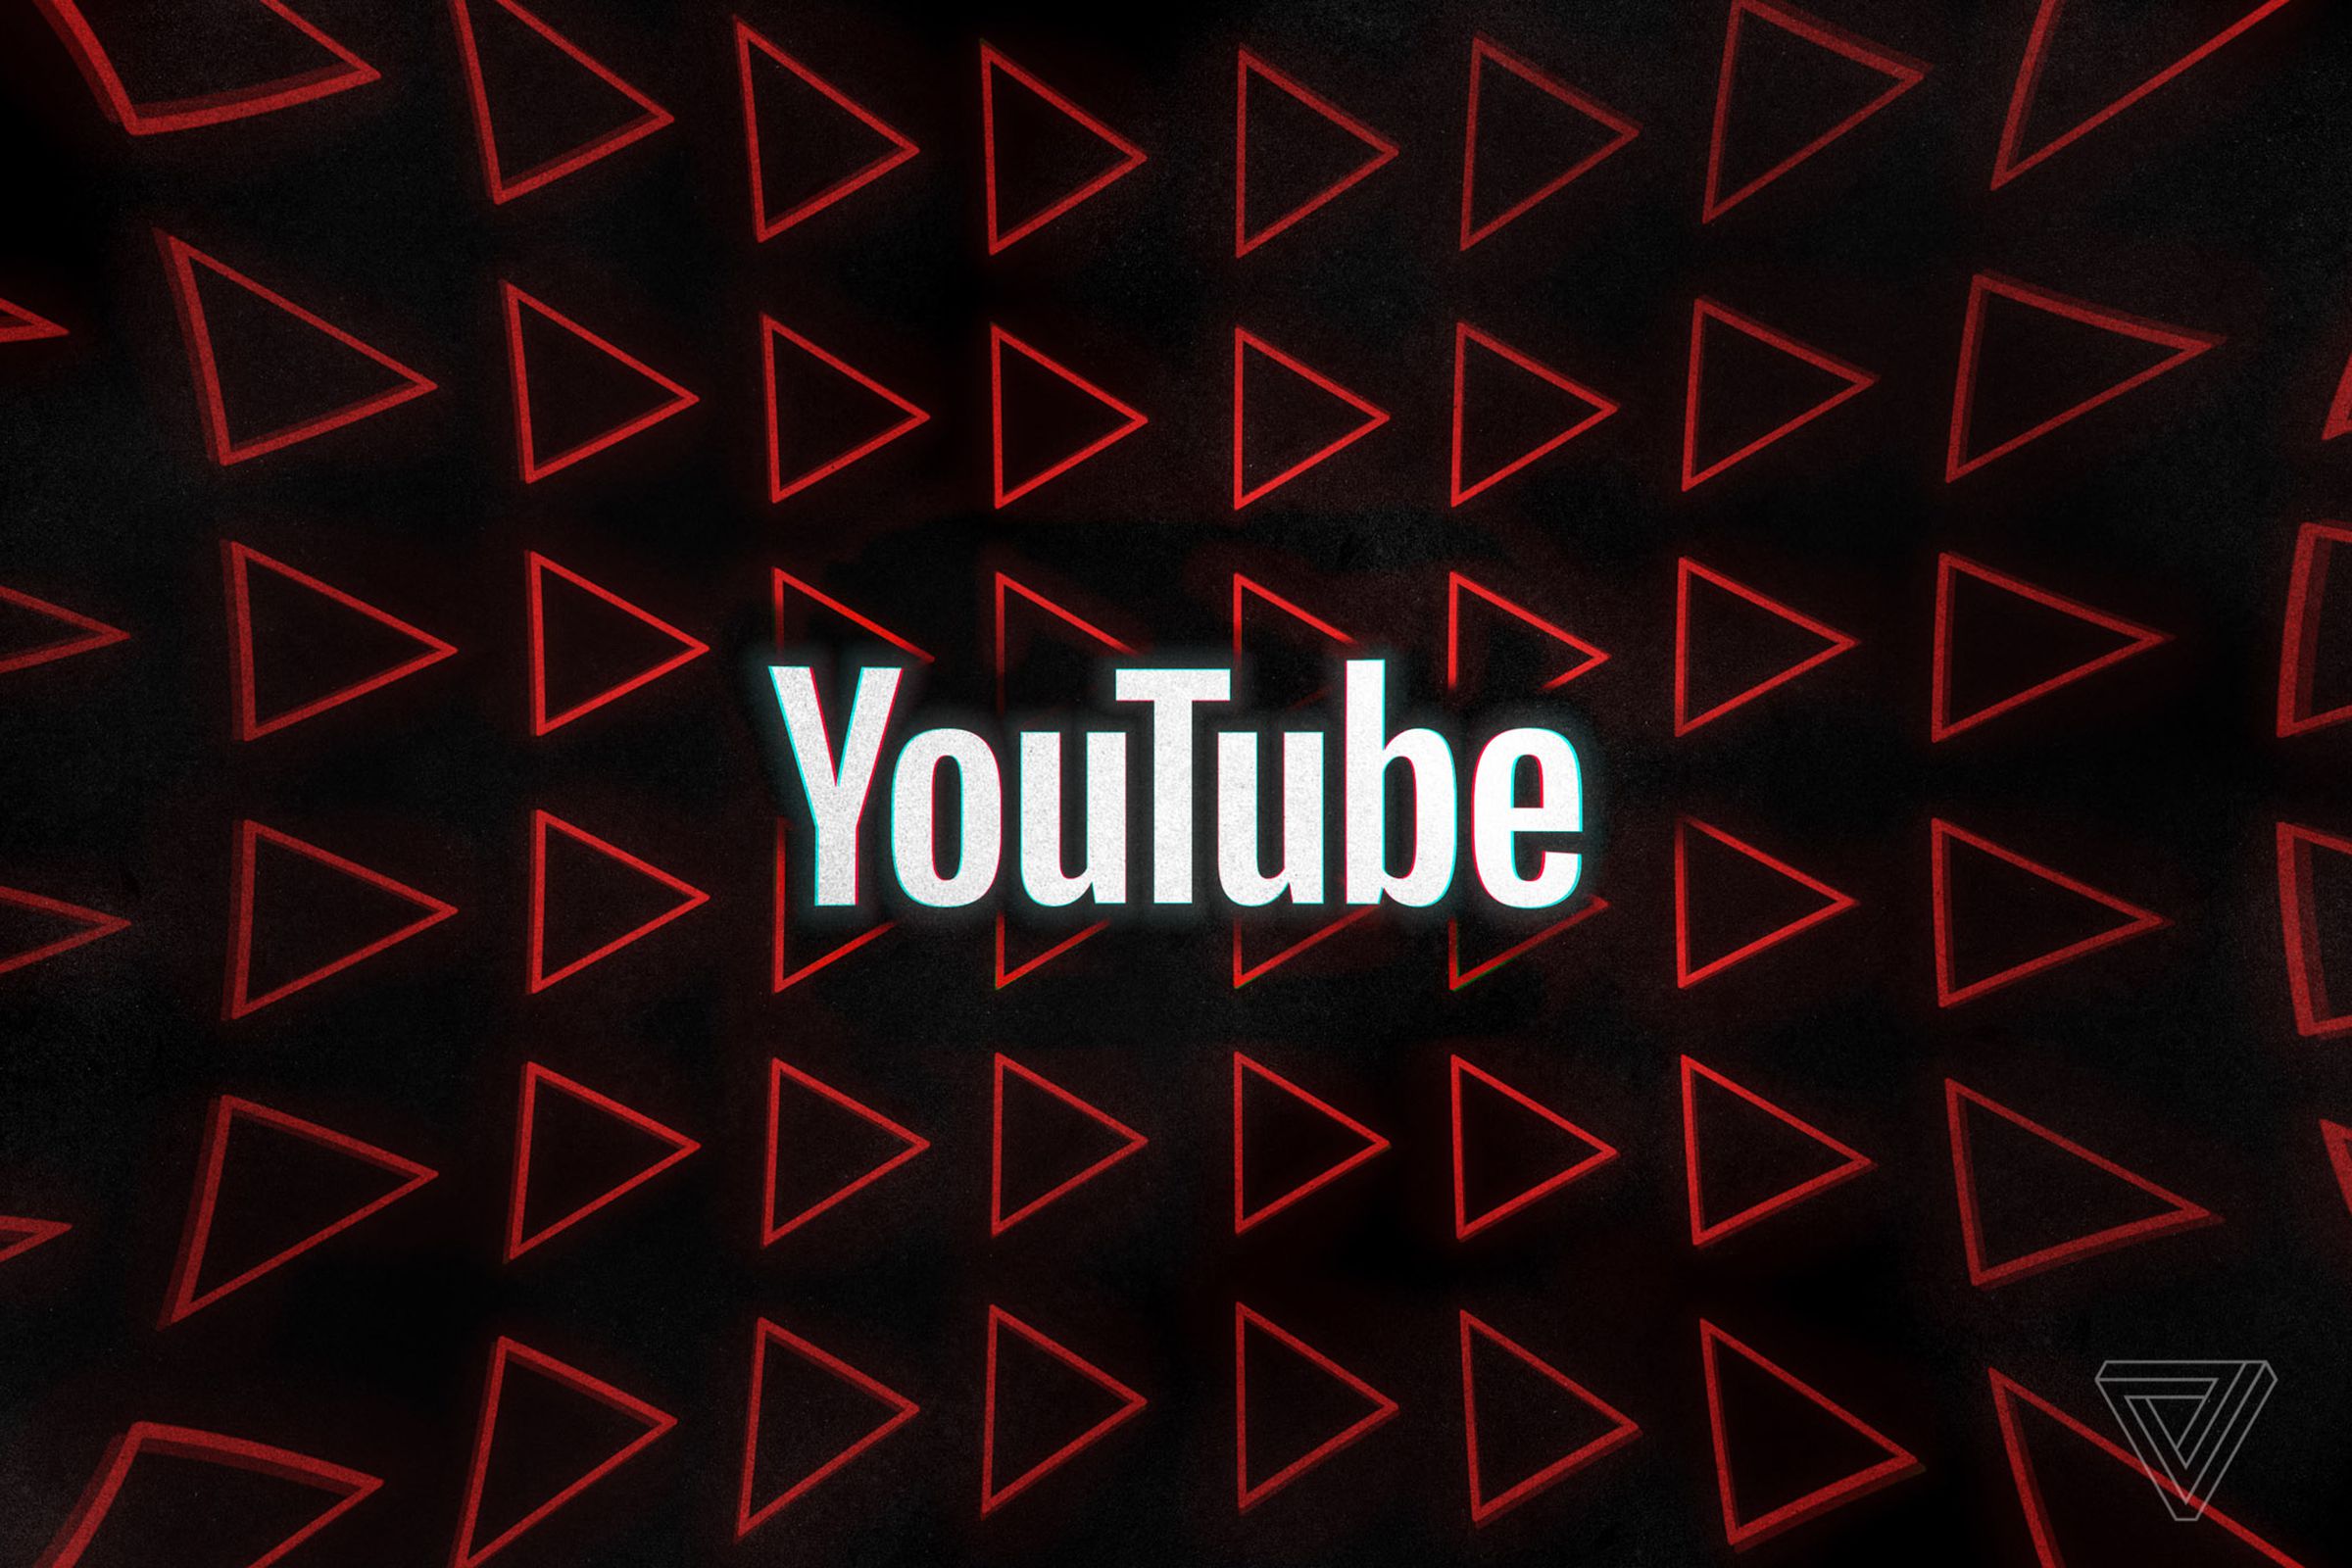 Зайди в ютуб песню. Логотип youtube. Красивый баннер для Твича. Youtube Music. Картинки тренды ютуба.